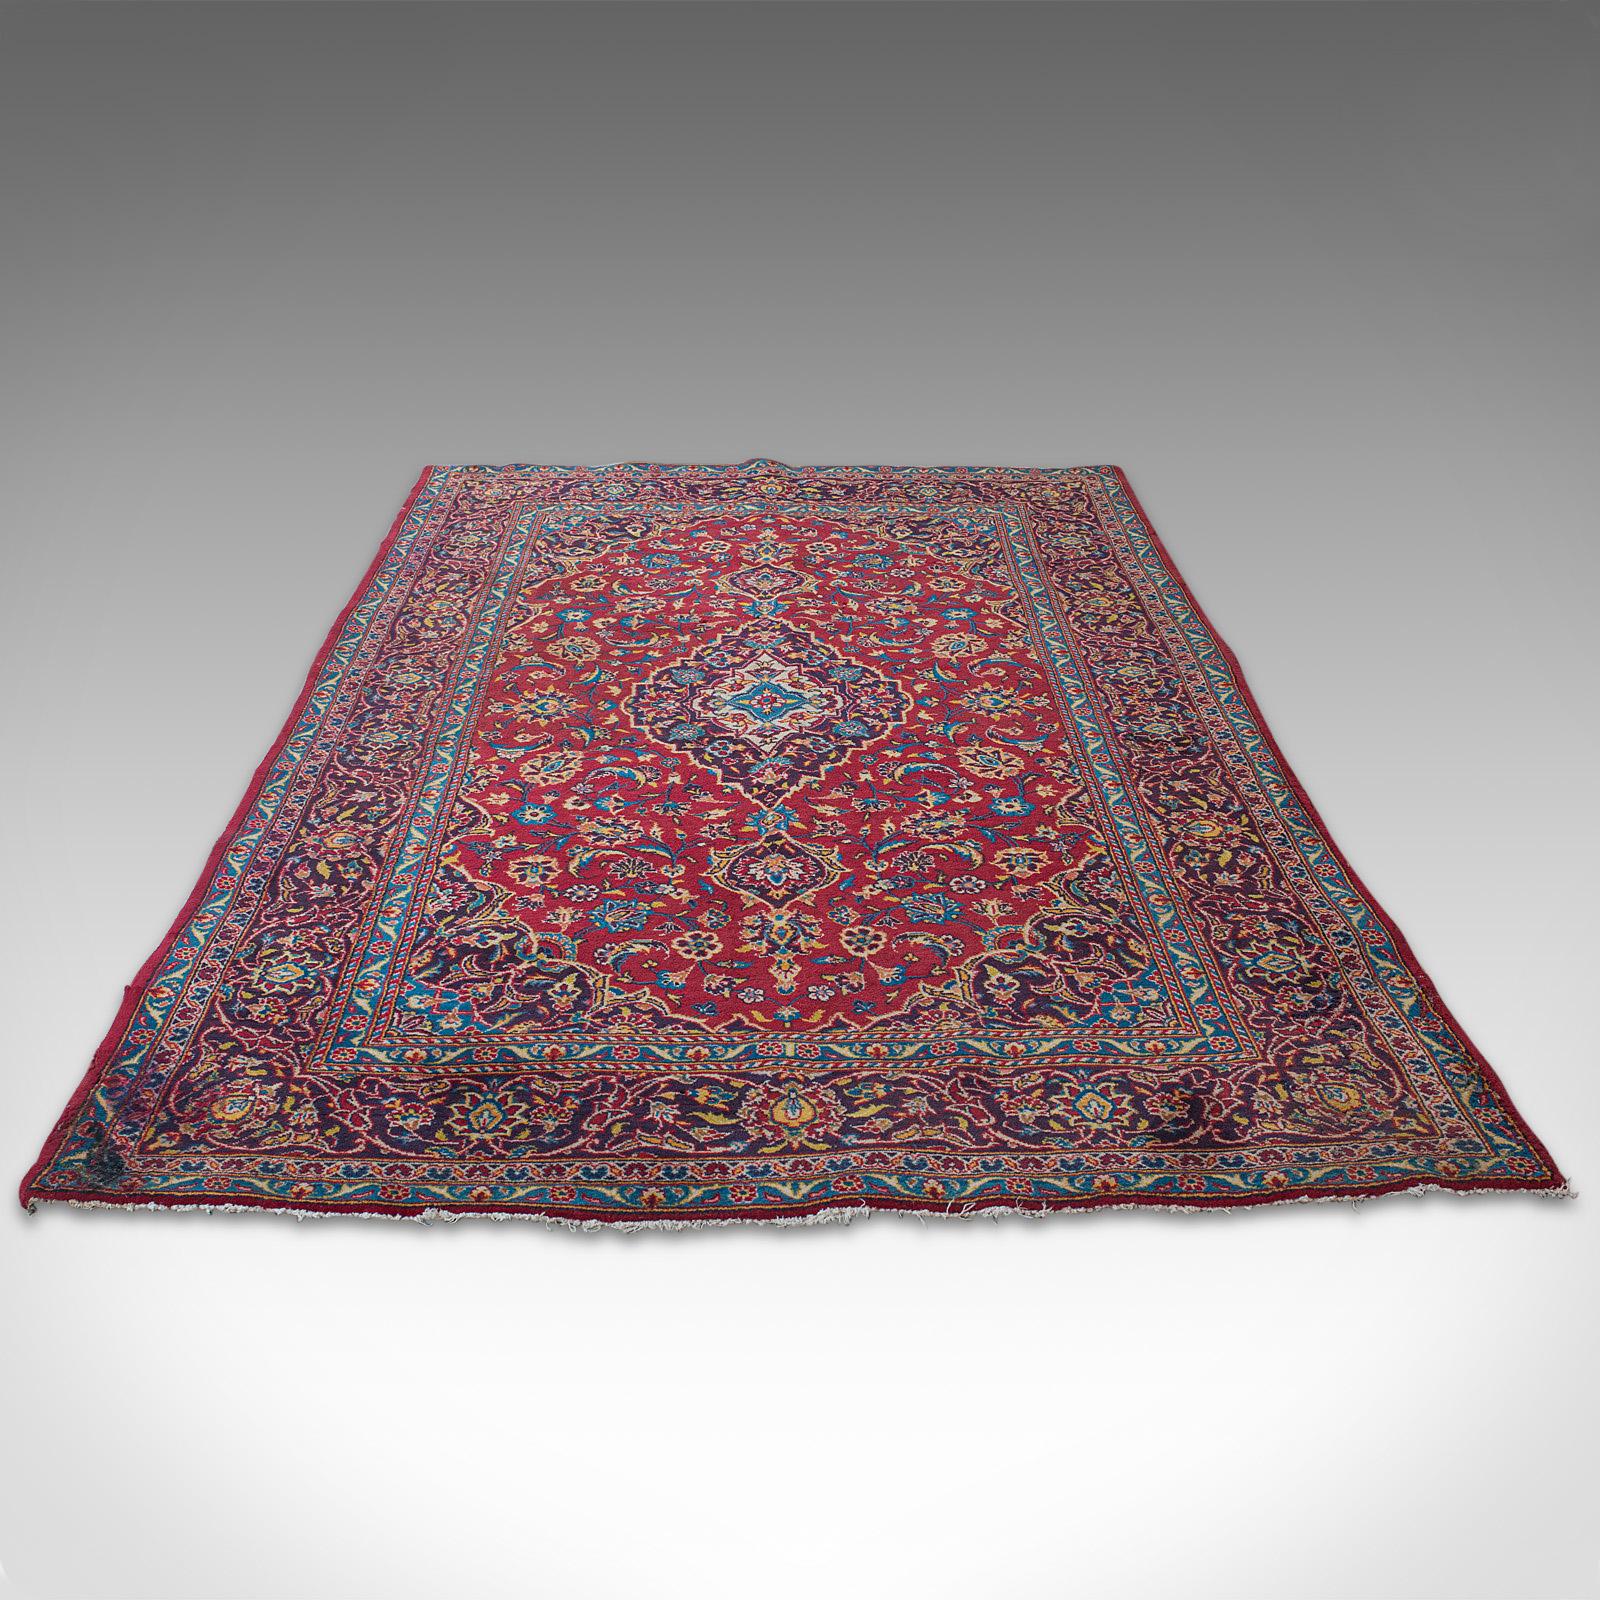 Il s'agit d'un tapis Tabriz vintage de qualité. Tapis en laine tissée du nord-ouest de la Perse, idéal pour le hall d'entrée ou le salon, datant de la fin du XXe siècle, vers 1980.

De format Dozar polyvalent, 144 cm (56,75